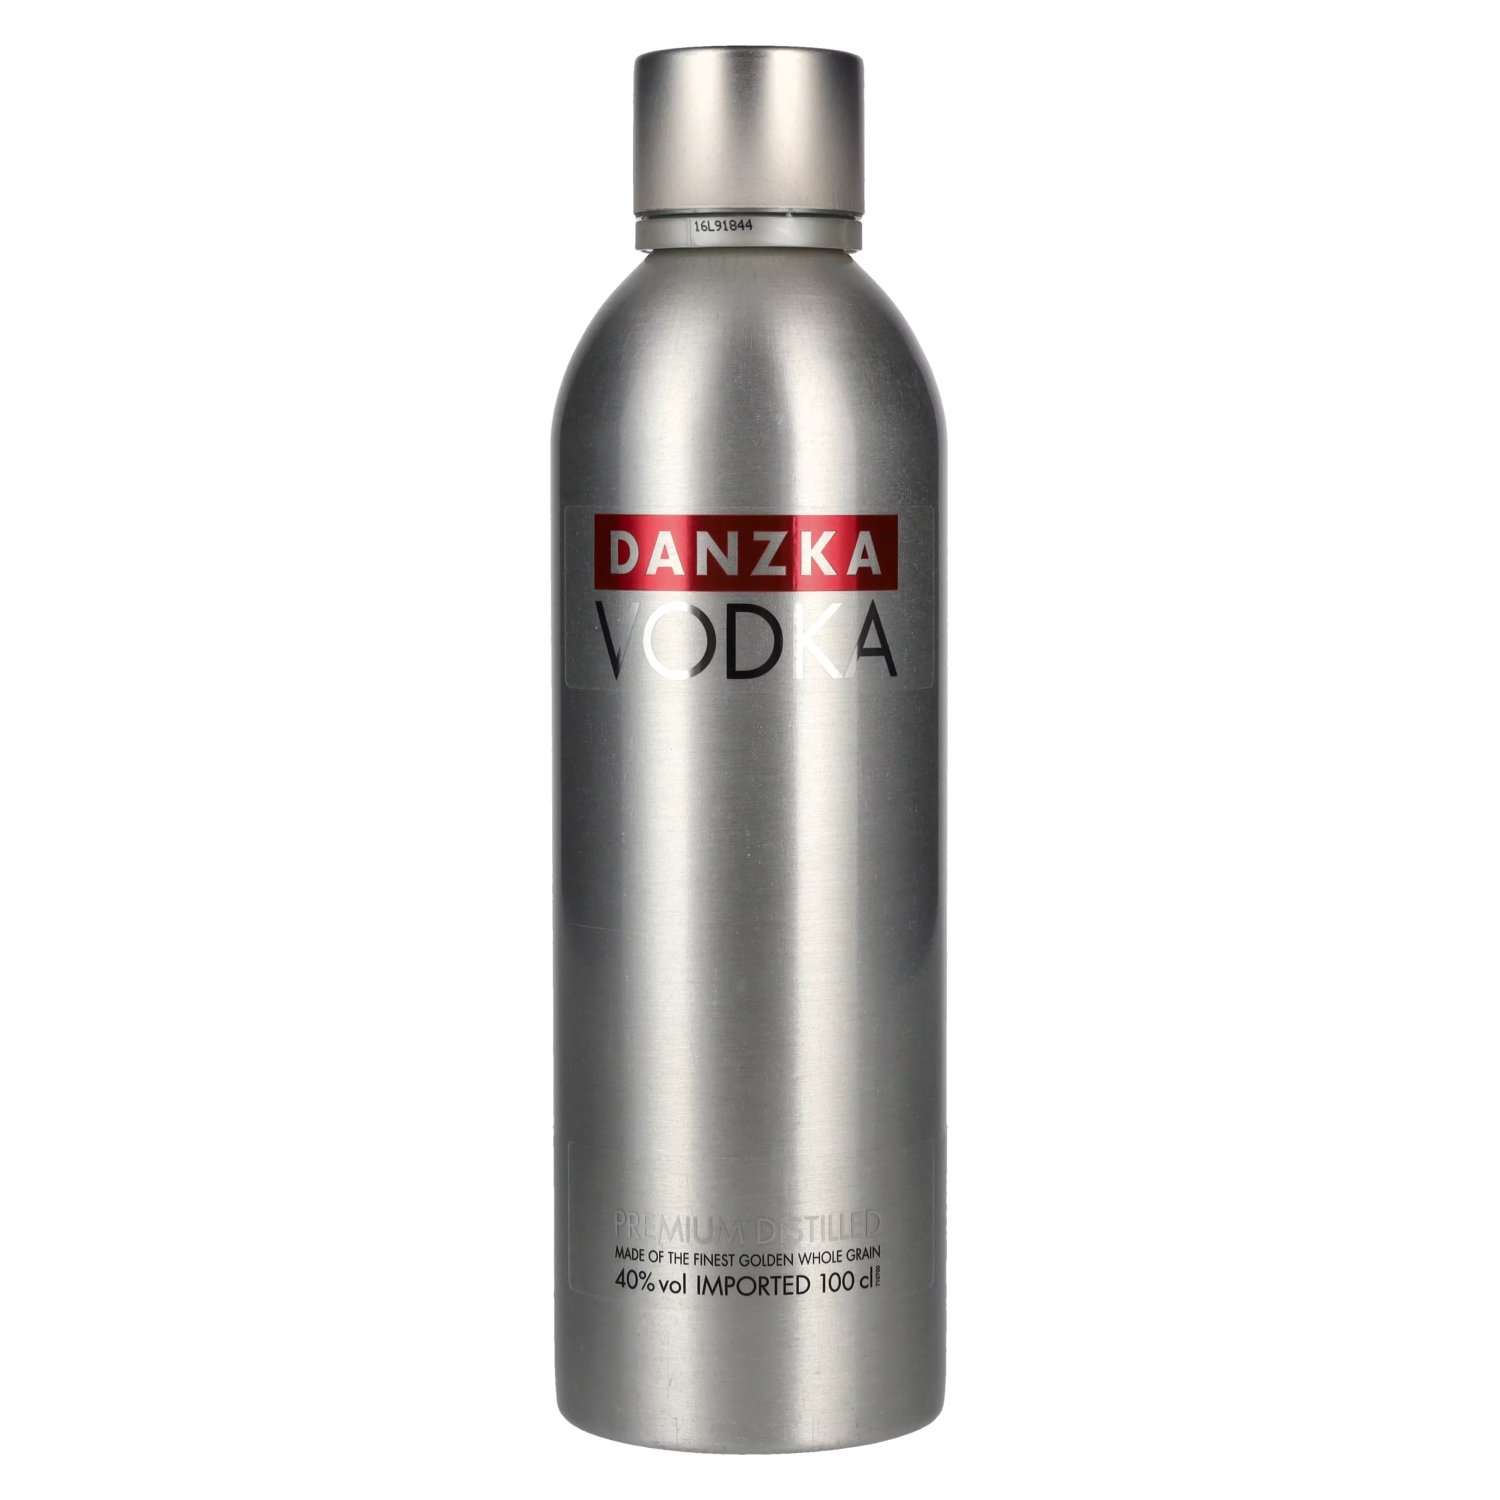 Danzka Vodka ORIGINAL Premium Distilled 1l Vol. 40